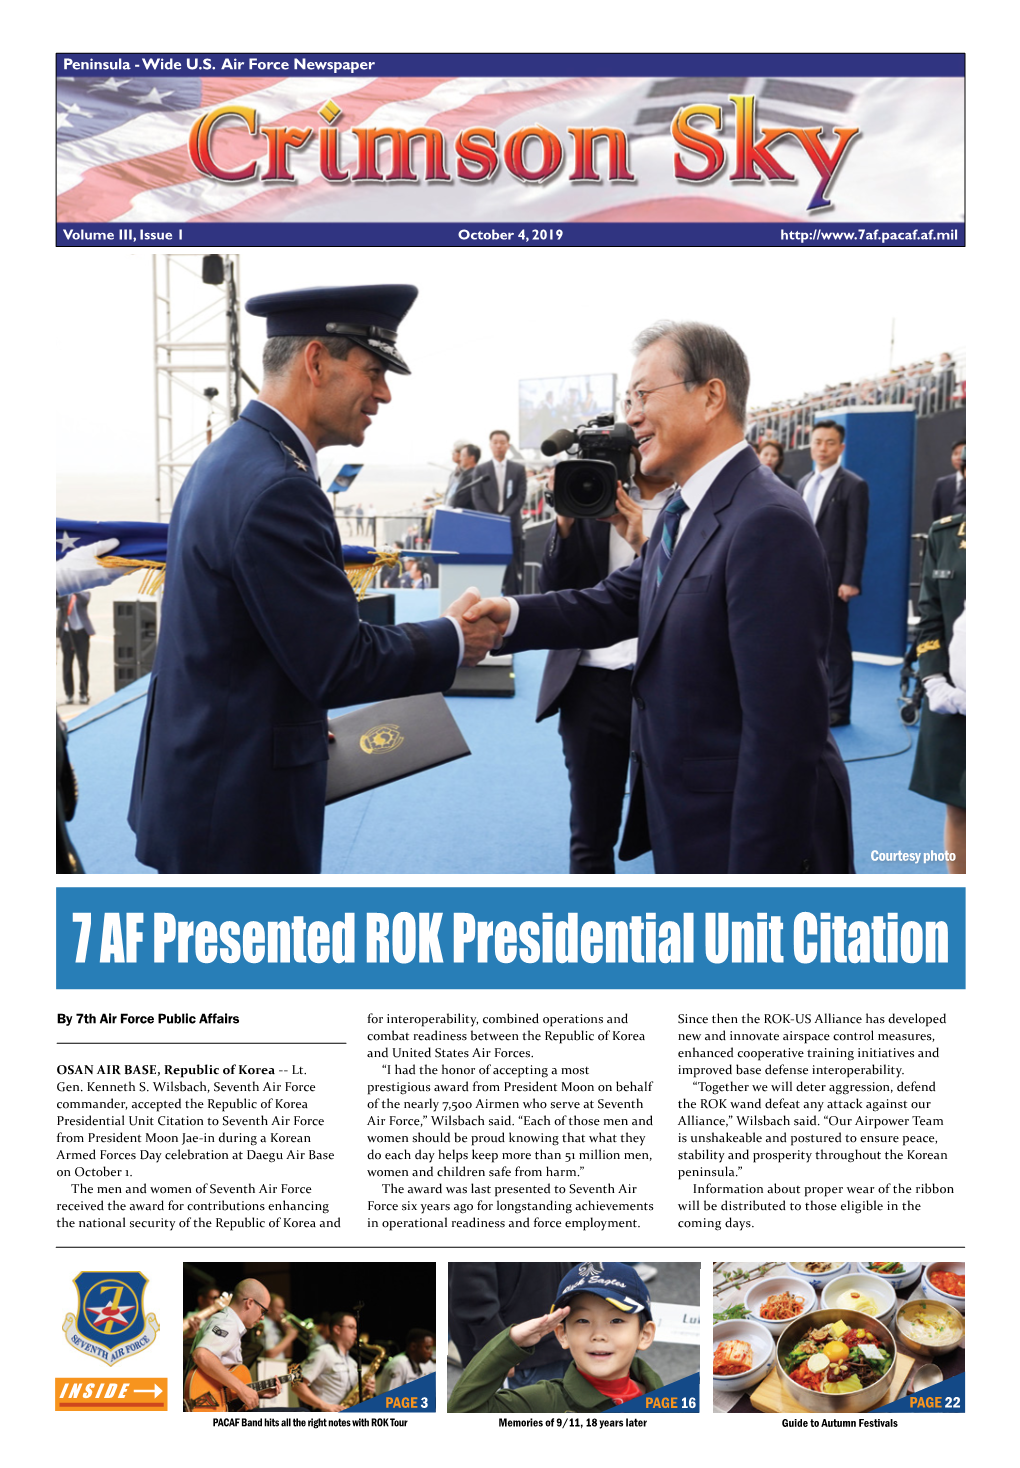 7 AF Presented ROK Presidential Unit Citation